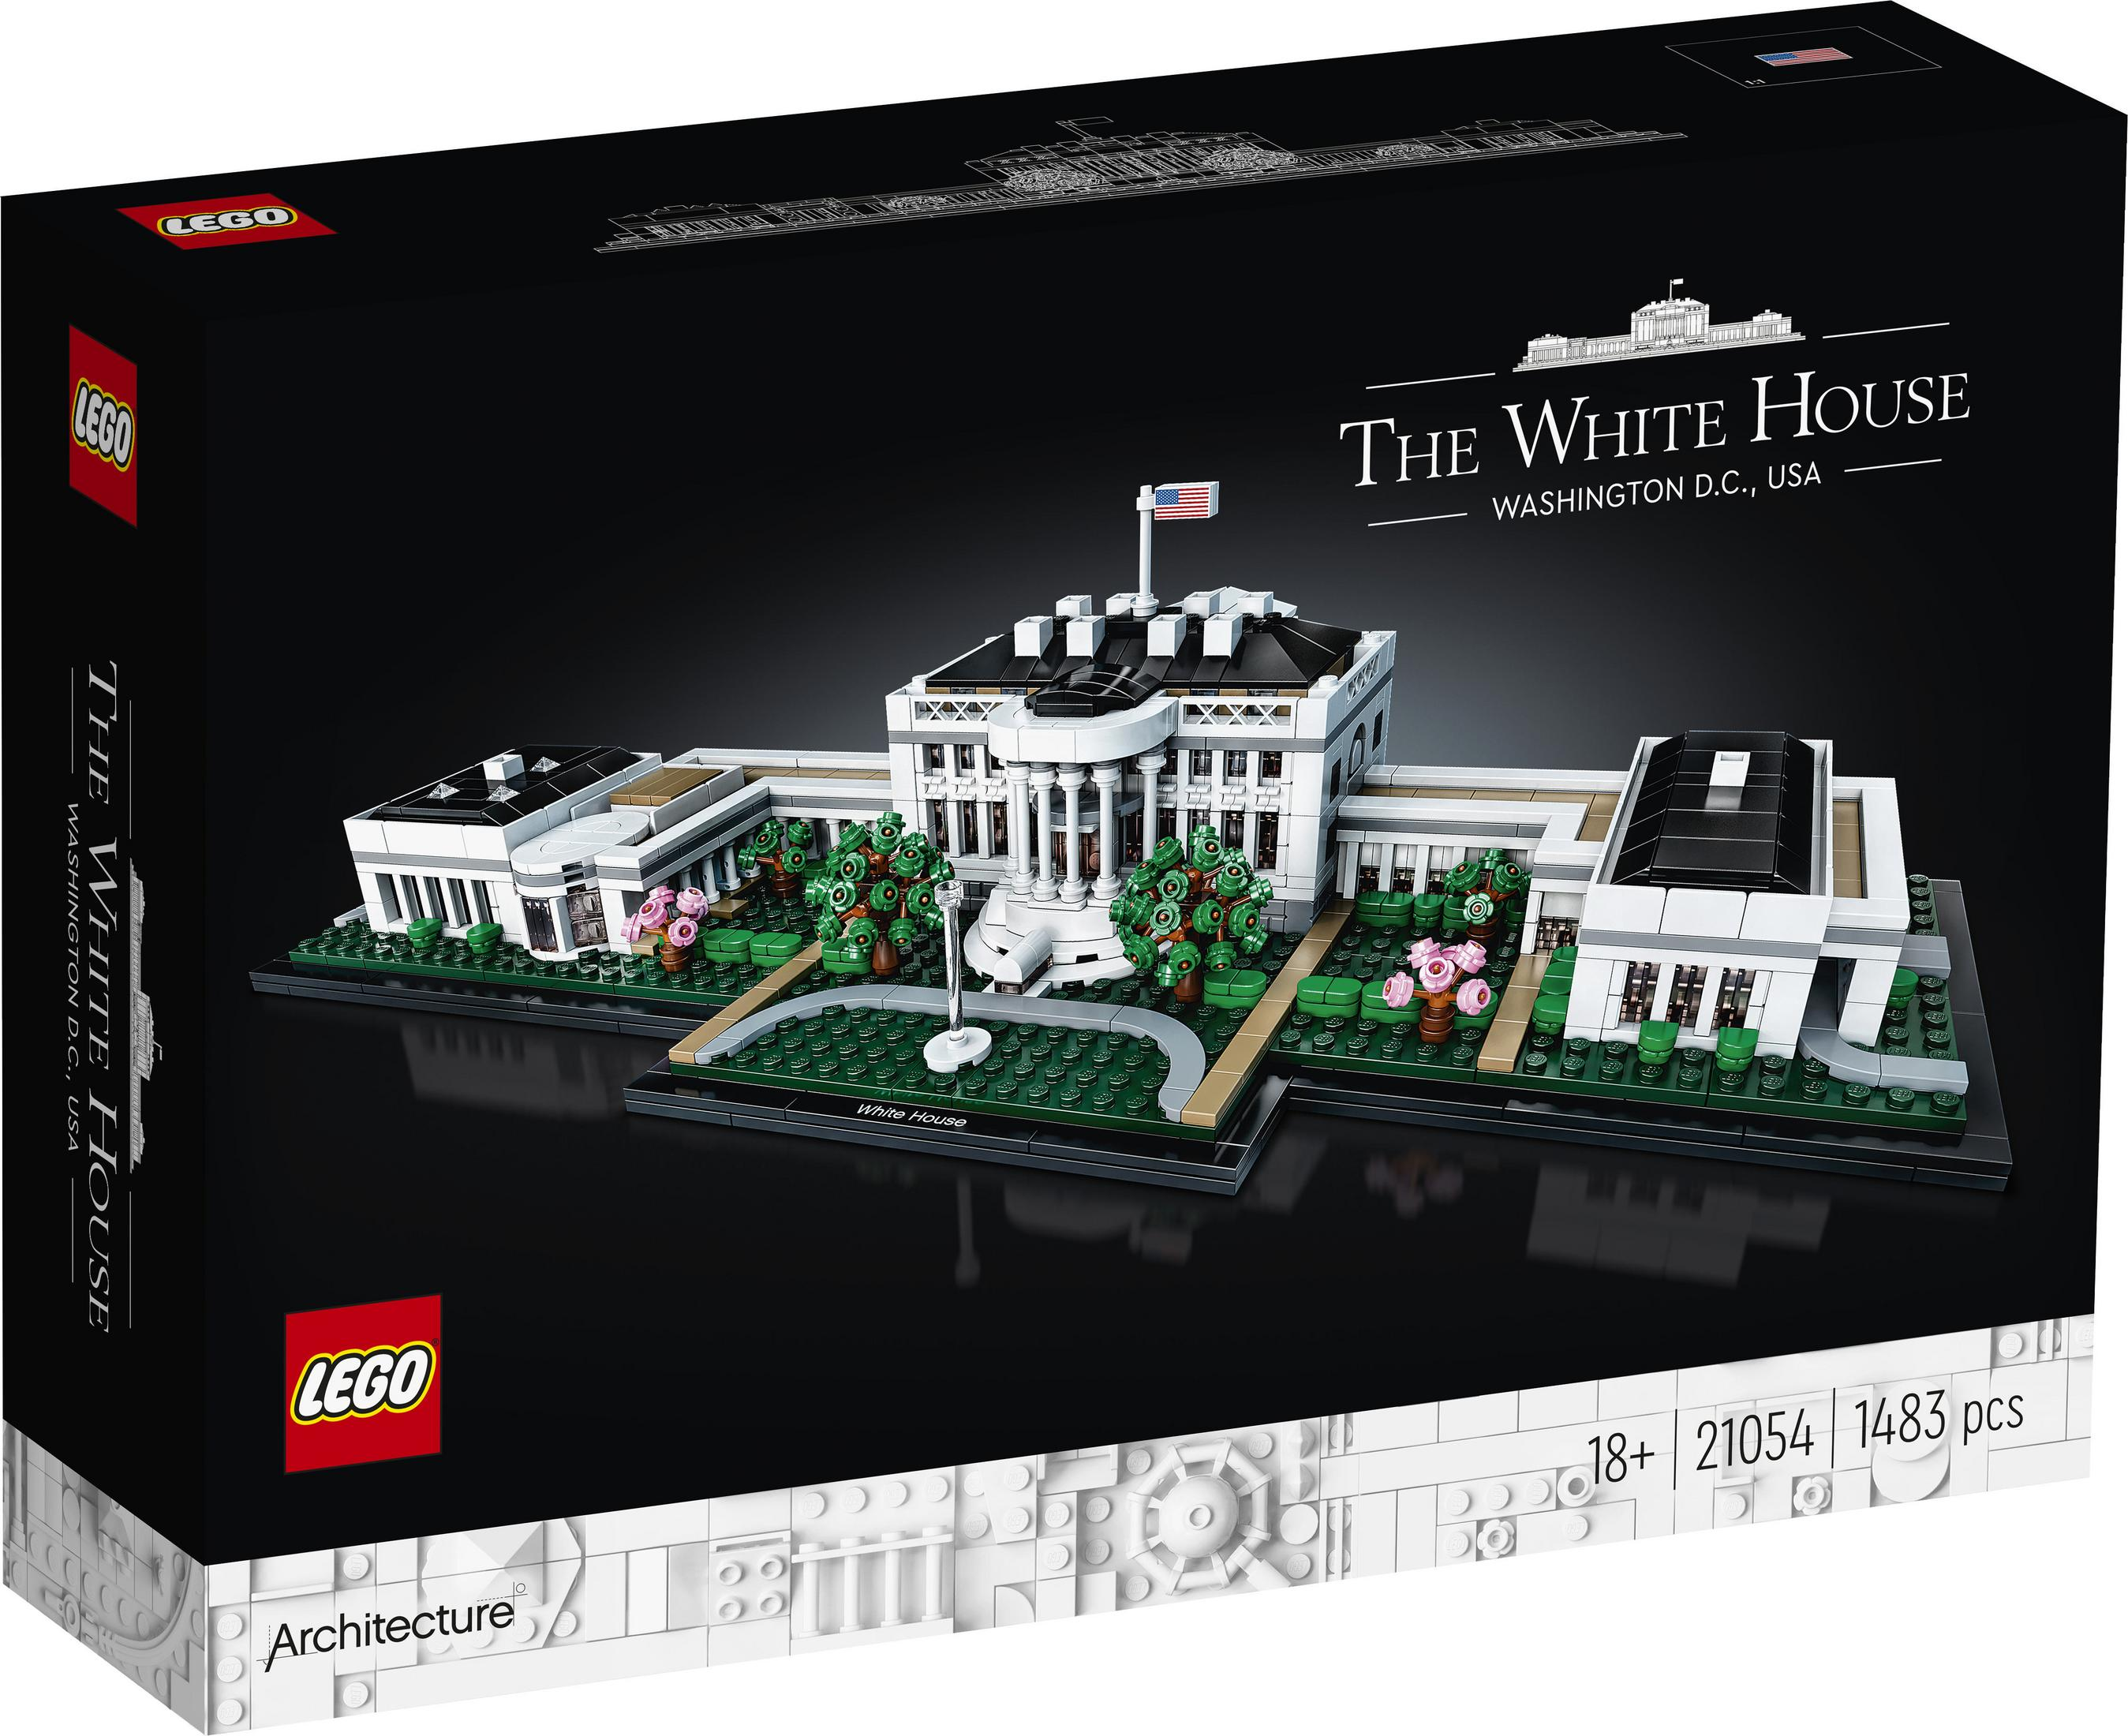 LEGO LEGO HAUS WEISSE 21054 DAS Architecture